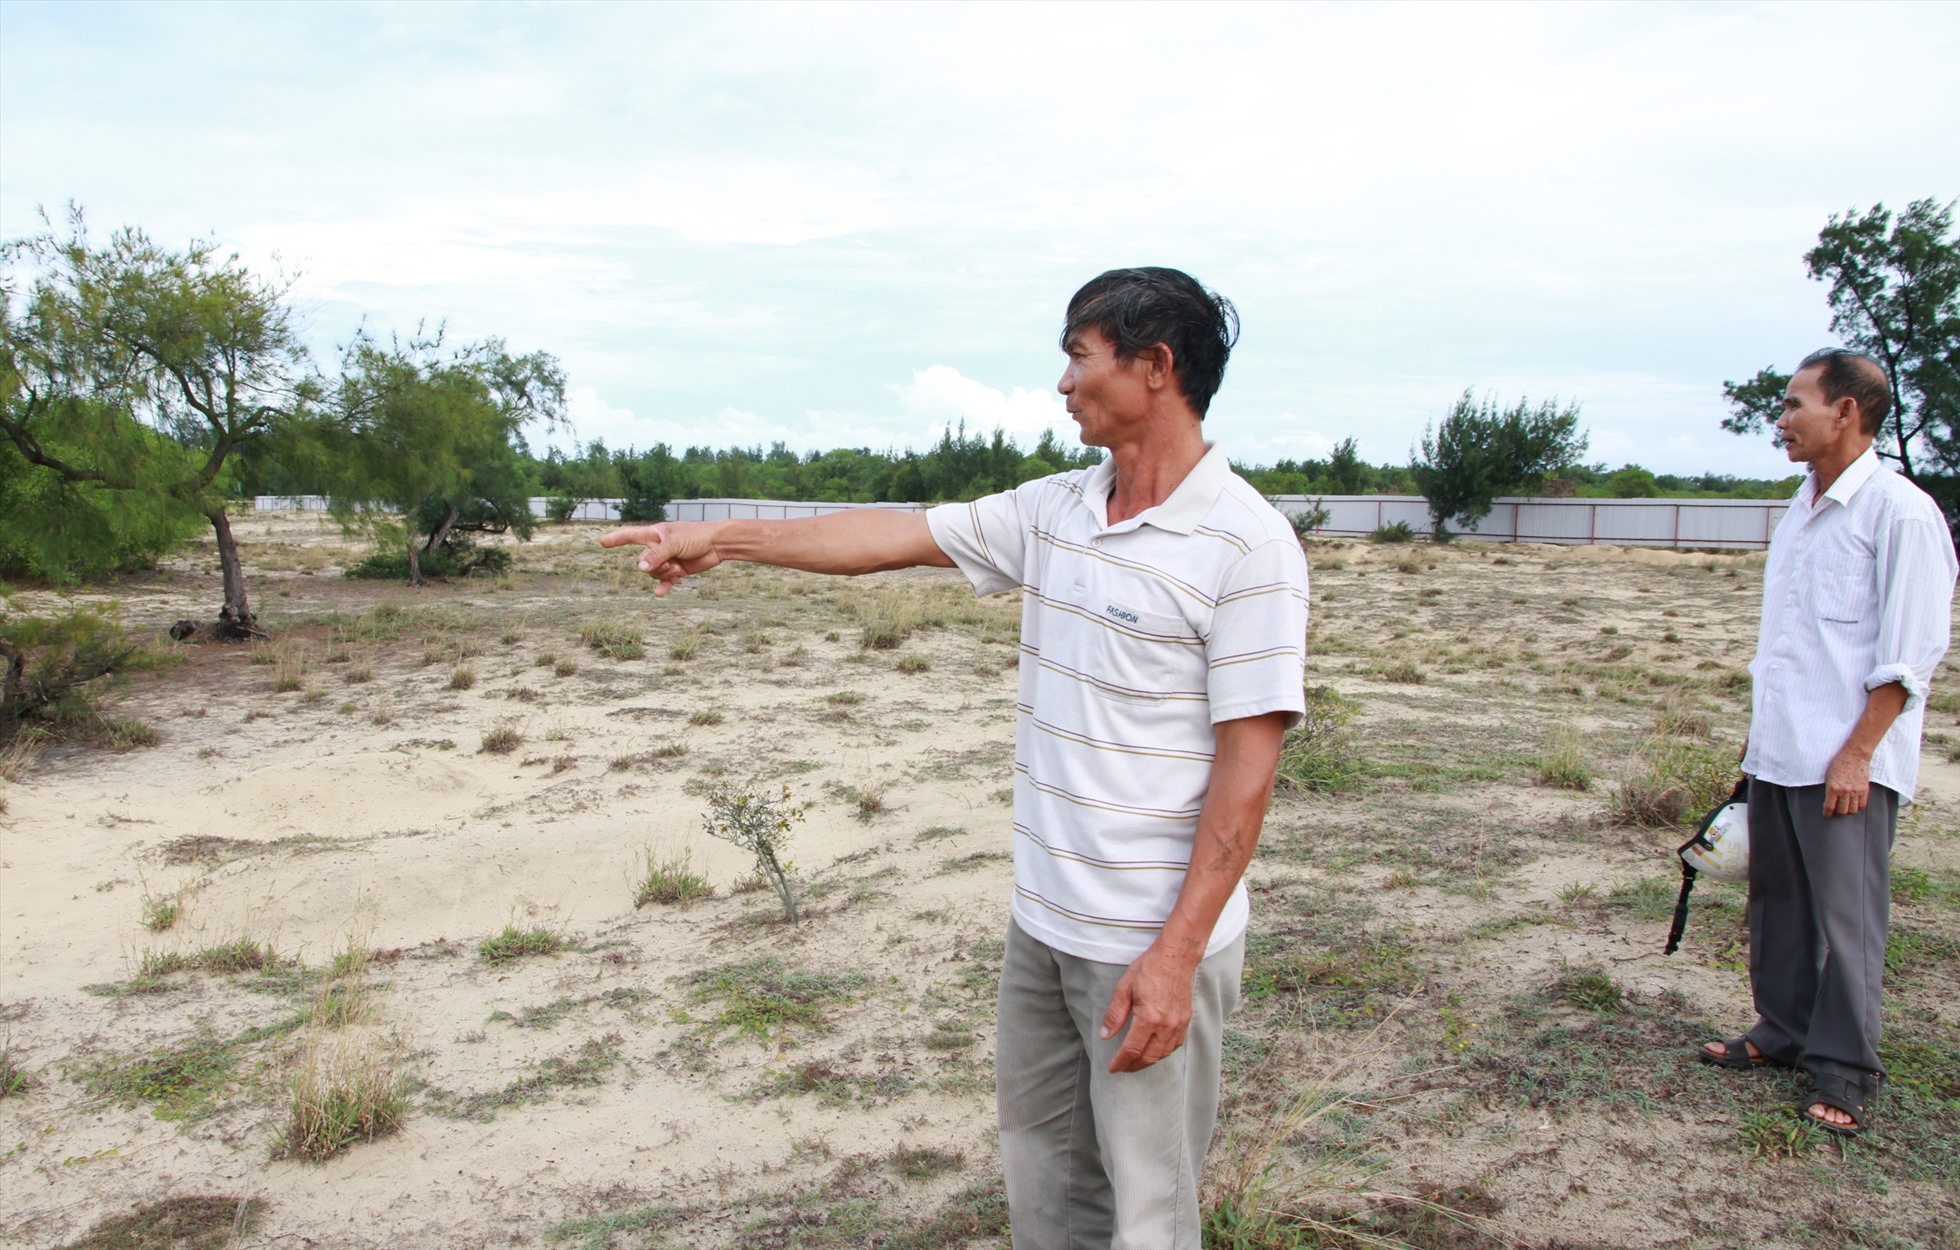 Nhiều dự án du lịch, dịch vụ dọc bờ biển tỉnh Quảng Trị sau khi được cấp phép bỏ hoang, không thực hiện dự án như cam kết. Ảnh: Hưng Thơ.